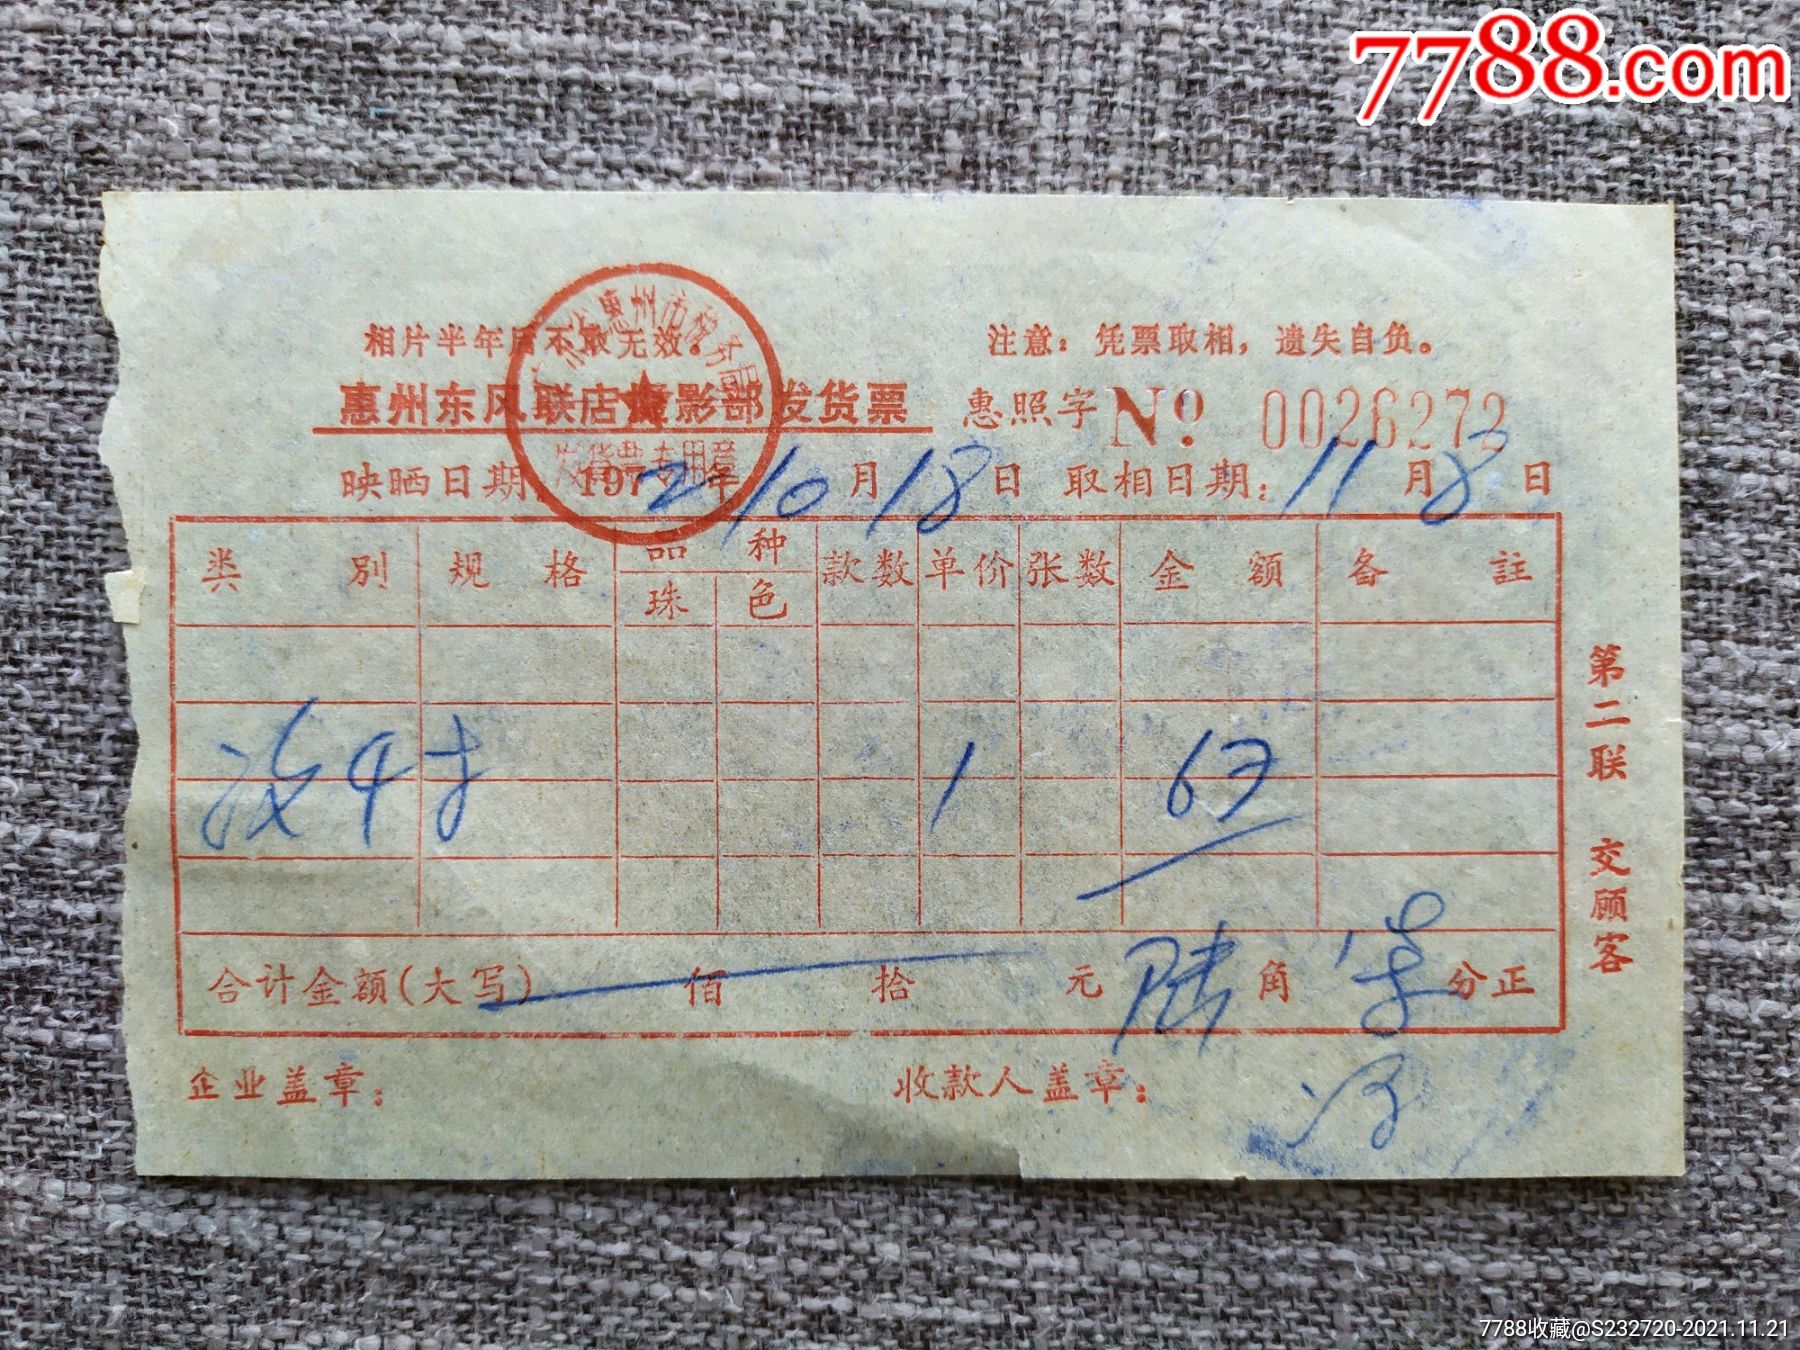 1972年广东惠州东风联店摄影部发货票